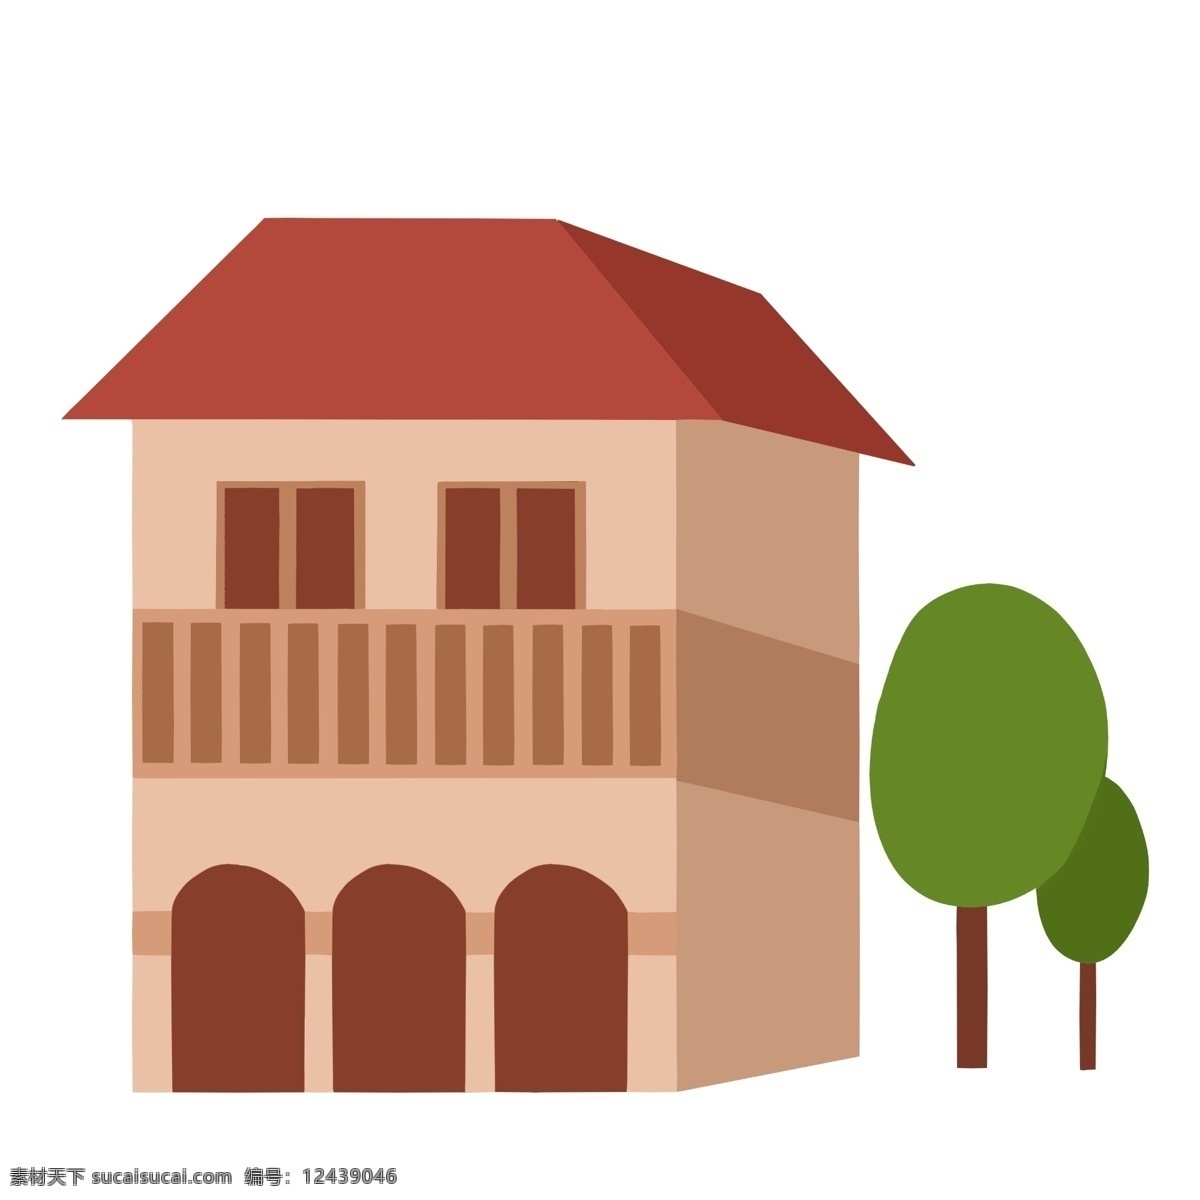 农家 房屋 装饰 插画 农家房屋 黄色的房屋 漂亮的房屋 创意房屋 立体房屋 卡通房屋 房屋插画